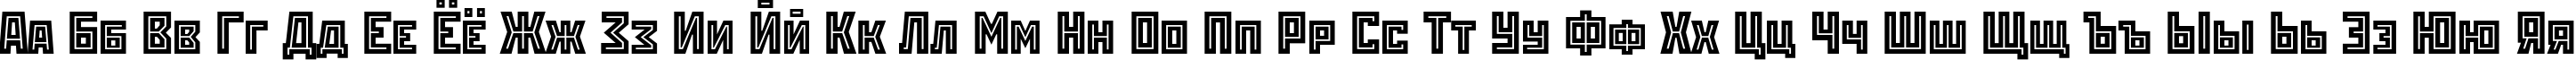 Пример написания русского алфавита шрифтом RodchenkoInlineC